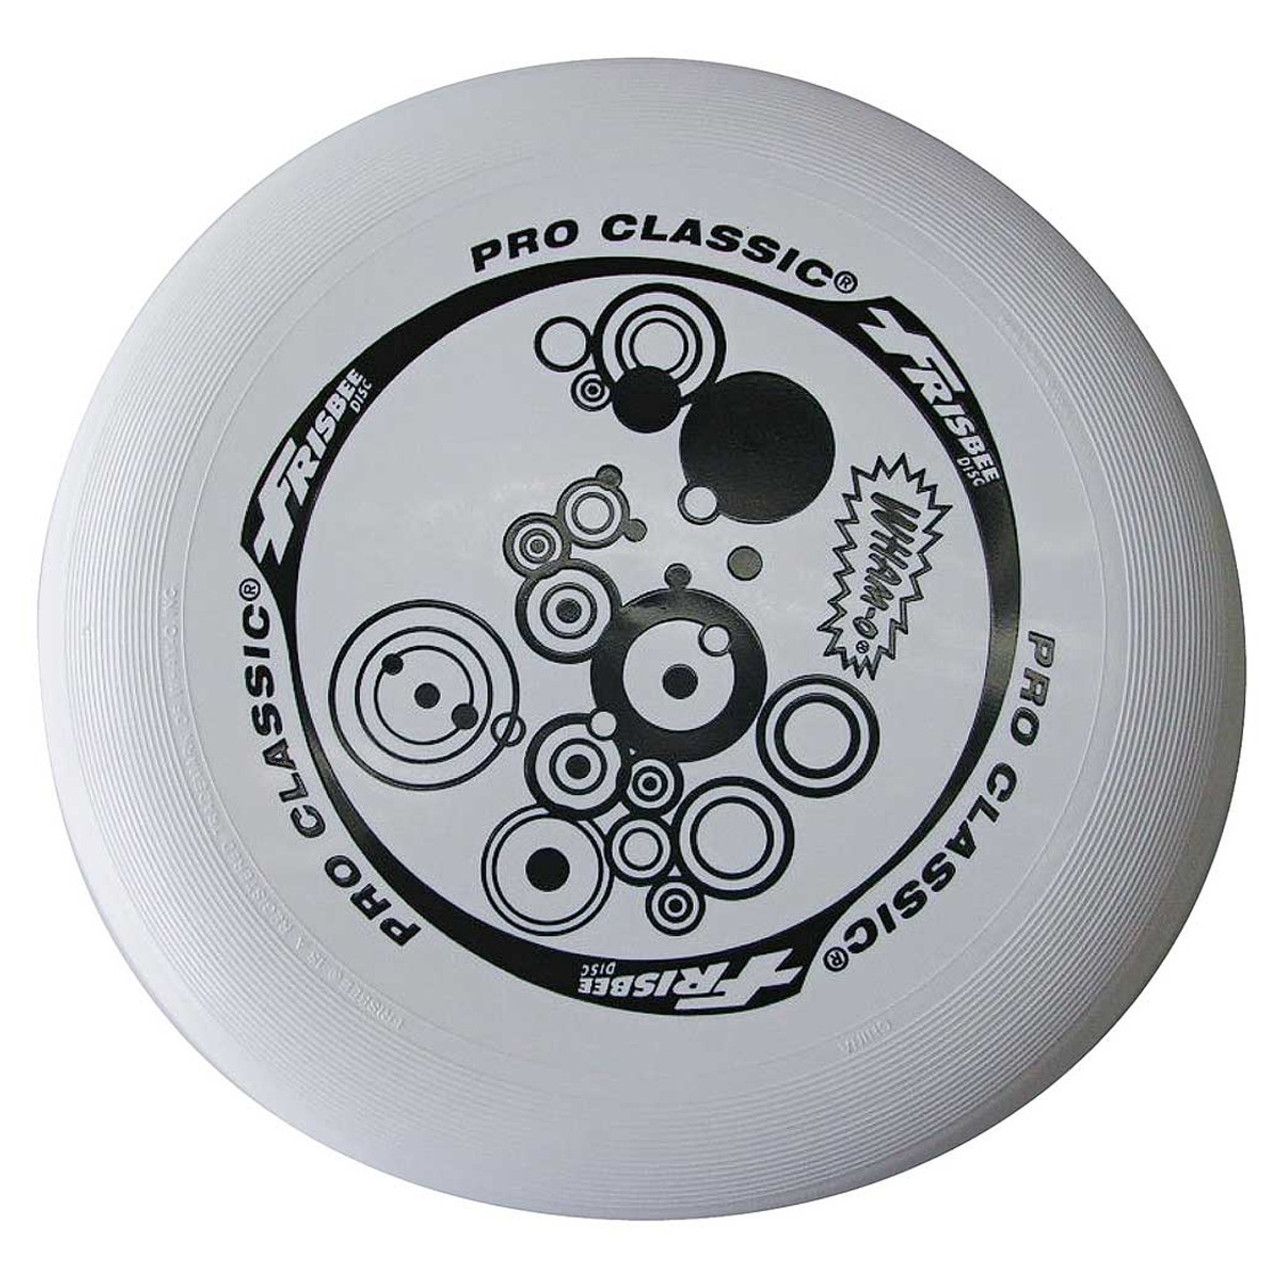 Wham-O Classic Frisbee